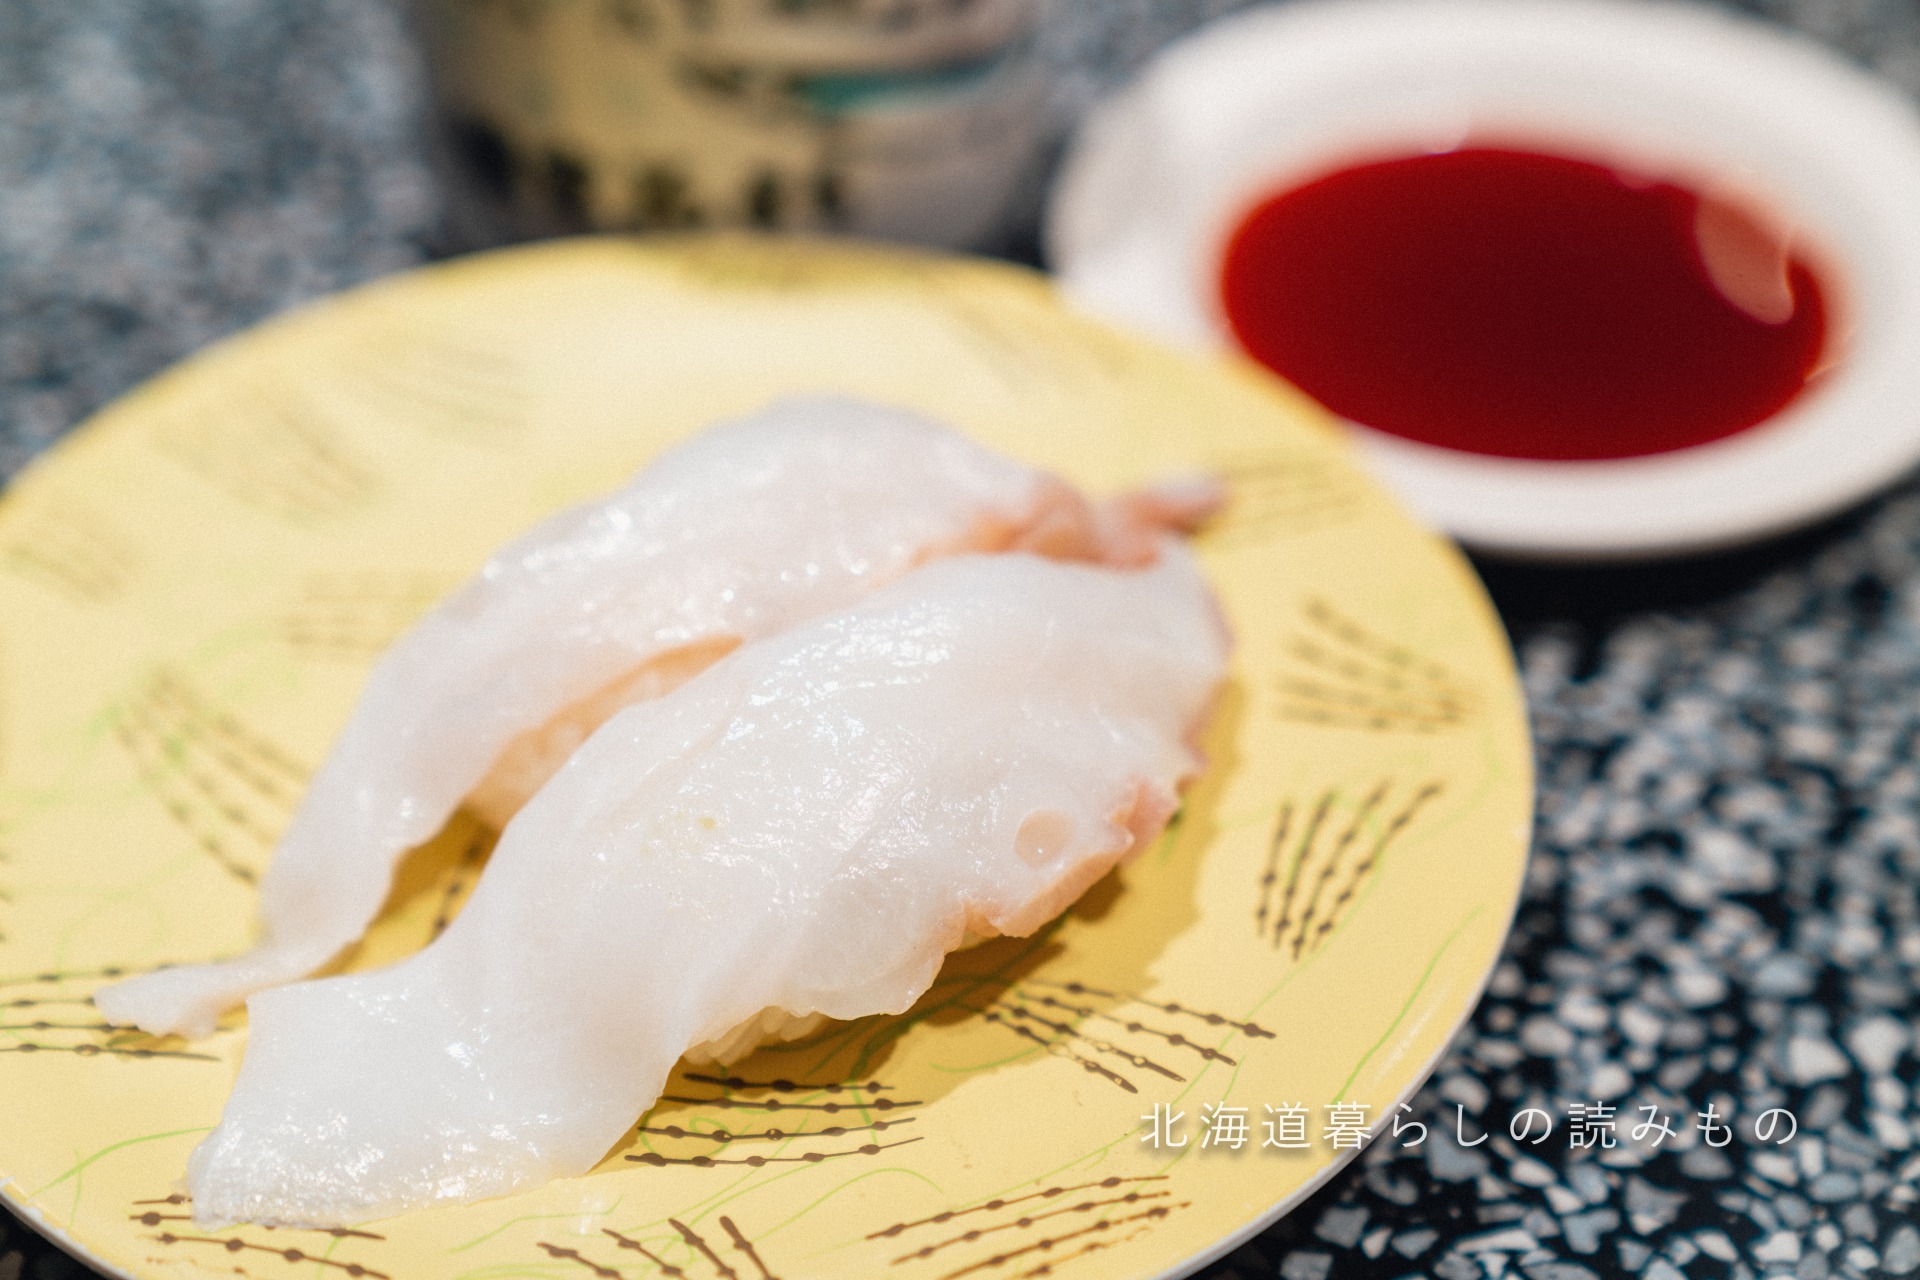 迴轉壽司根室花丸的菜單上的「章魚脚」